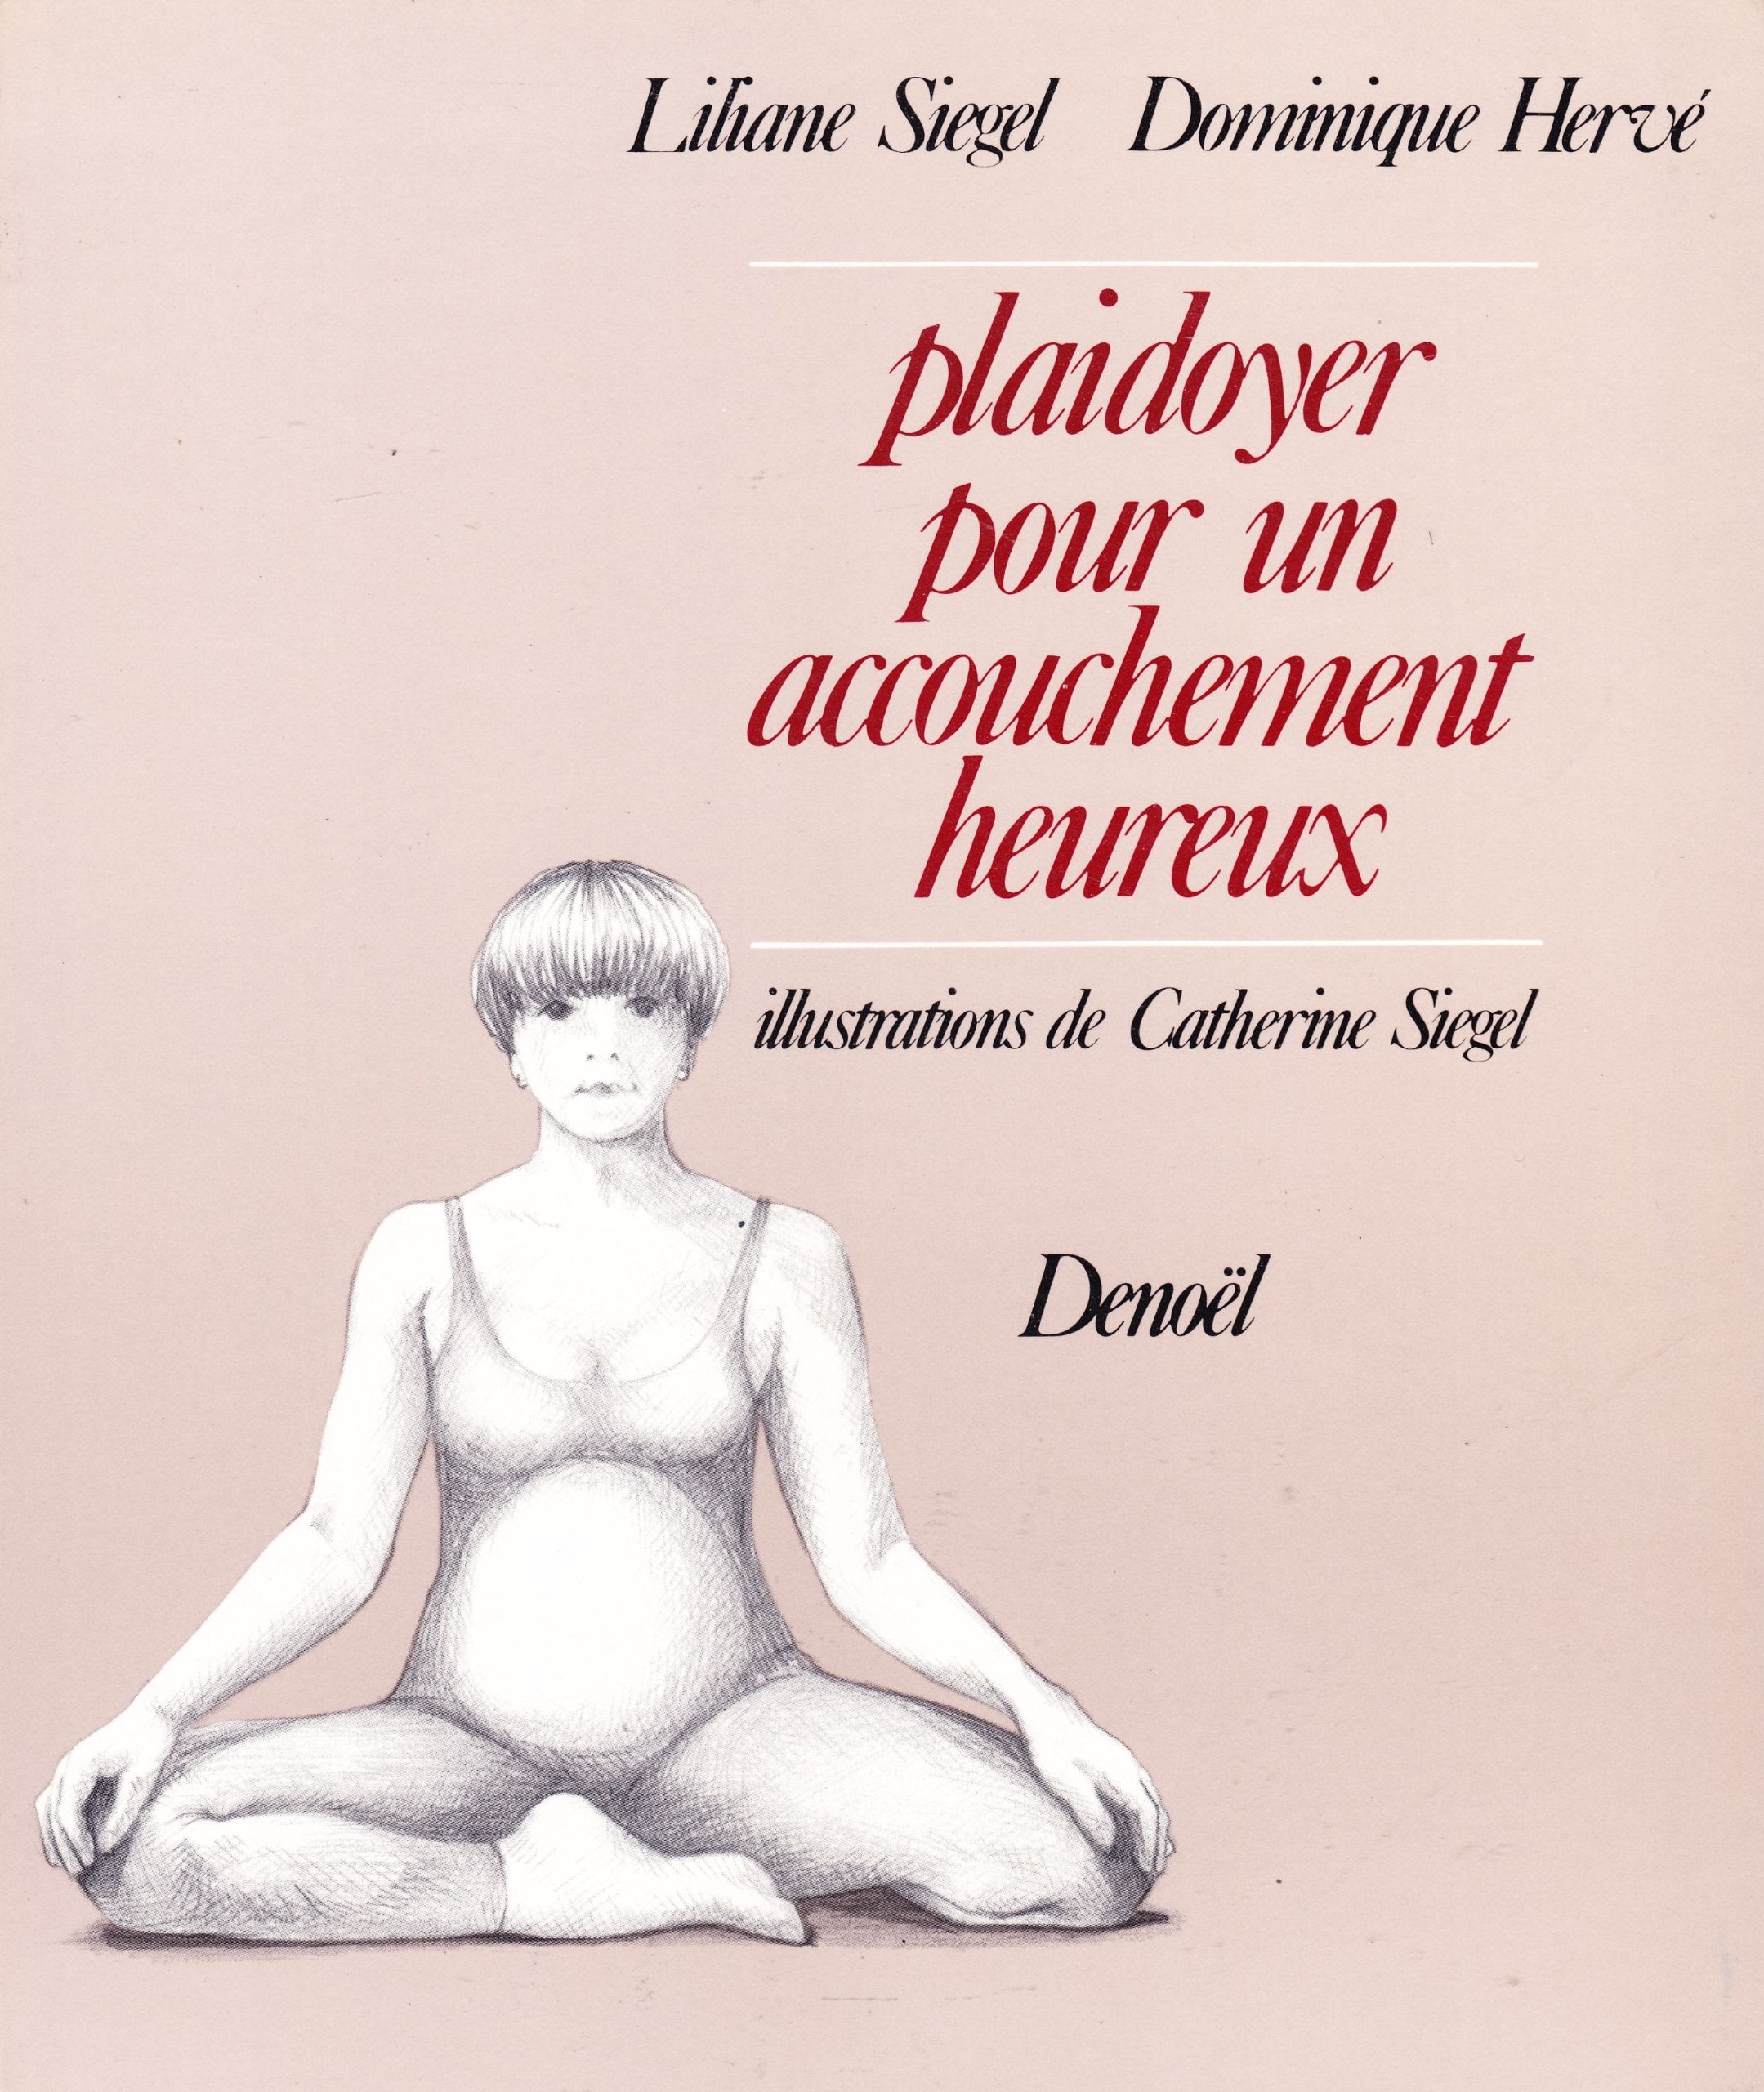 Livre ISBN  Plaidoyer pour un accouchement heureux (Lihane Siegel)